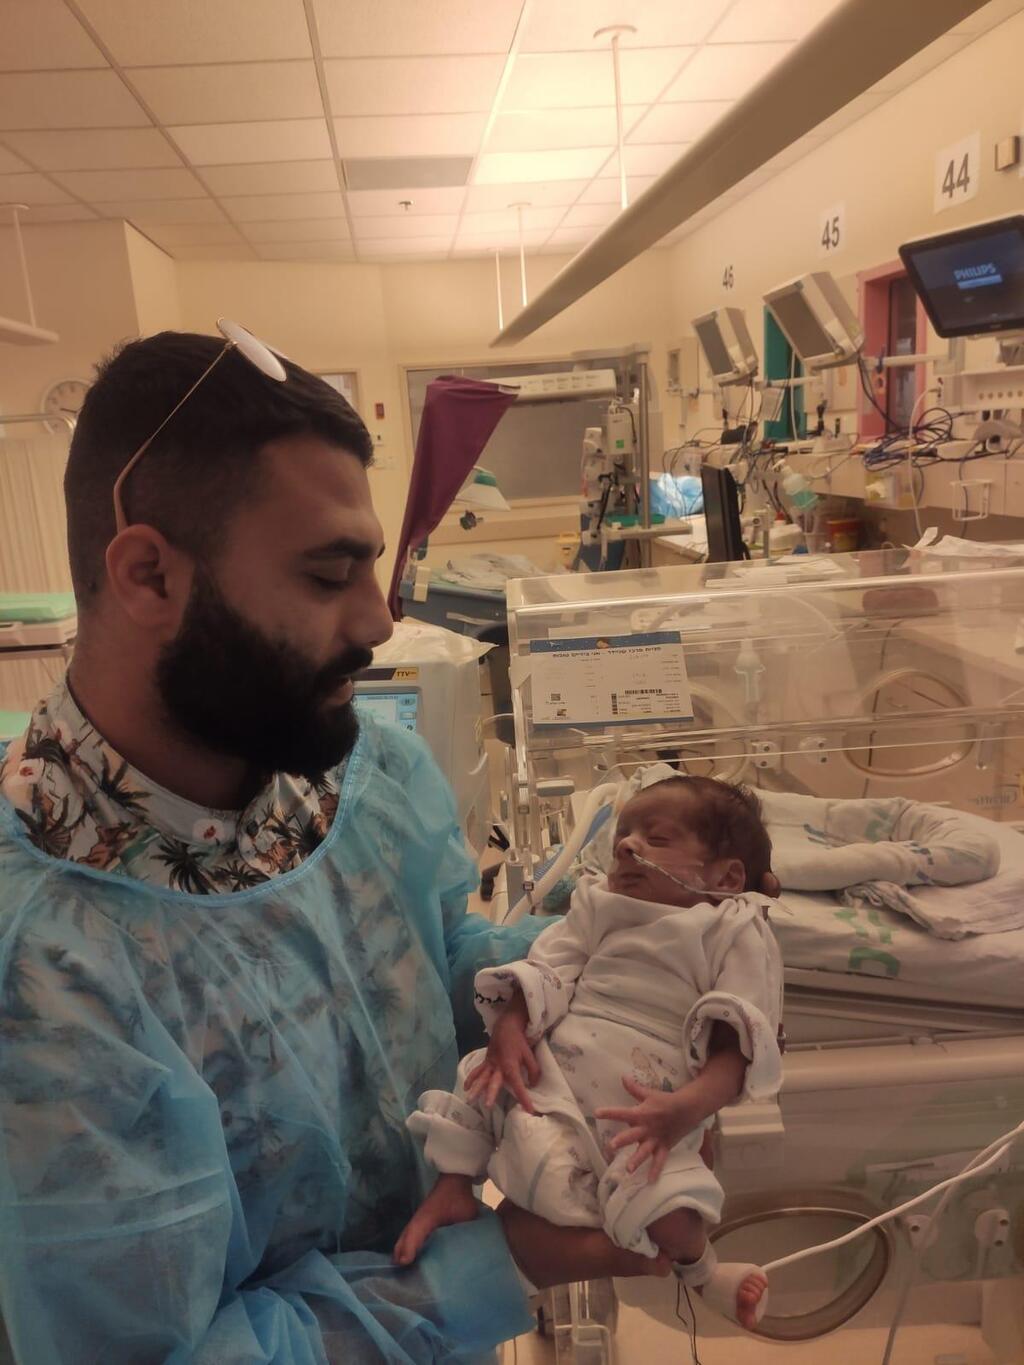 ג'וני יוסוף תינוק פליט סורי מקפריסין ניתוח לב בשניידר